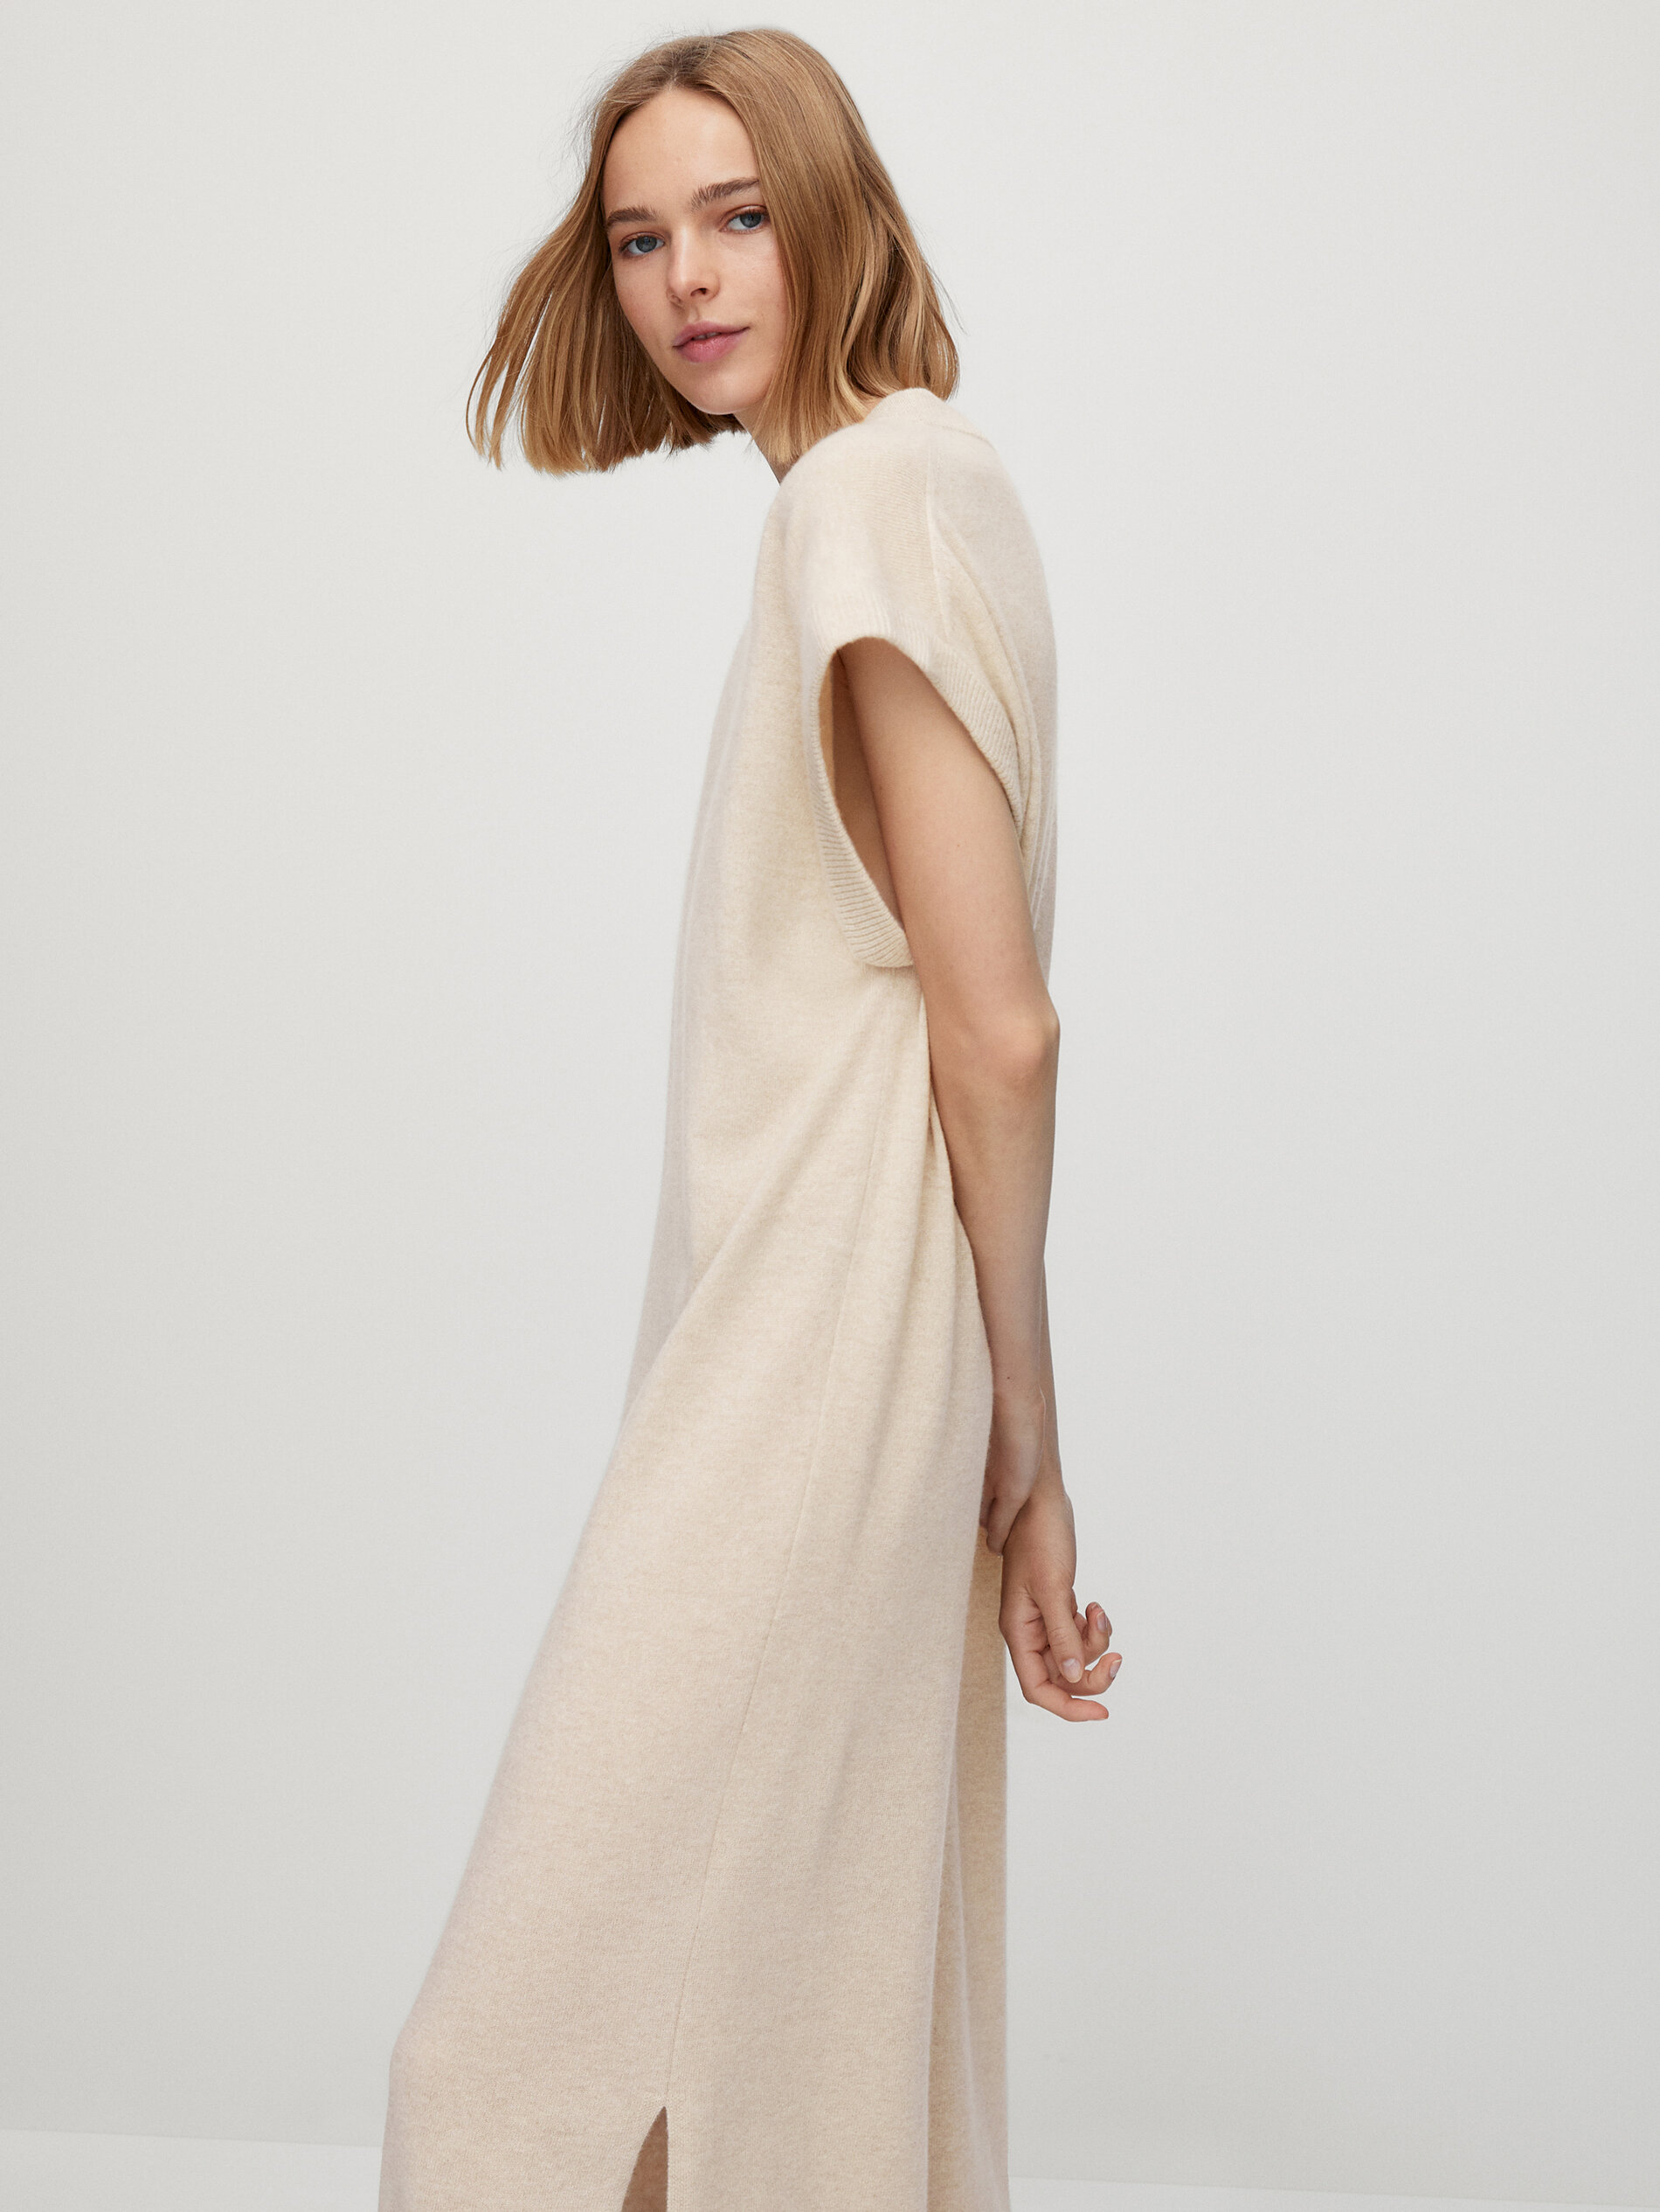 Long 100% cashmere short sleeve dress